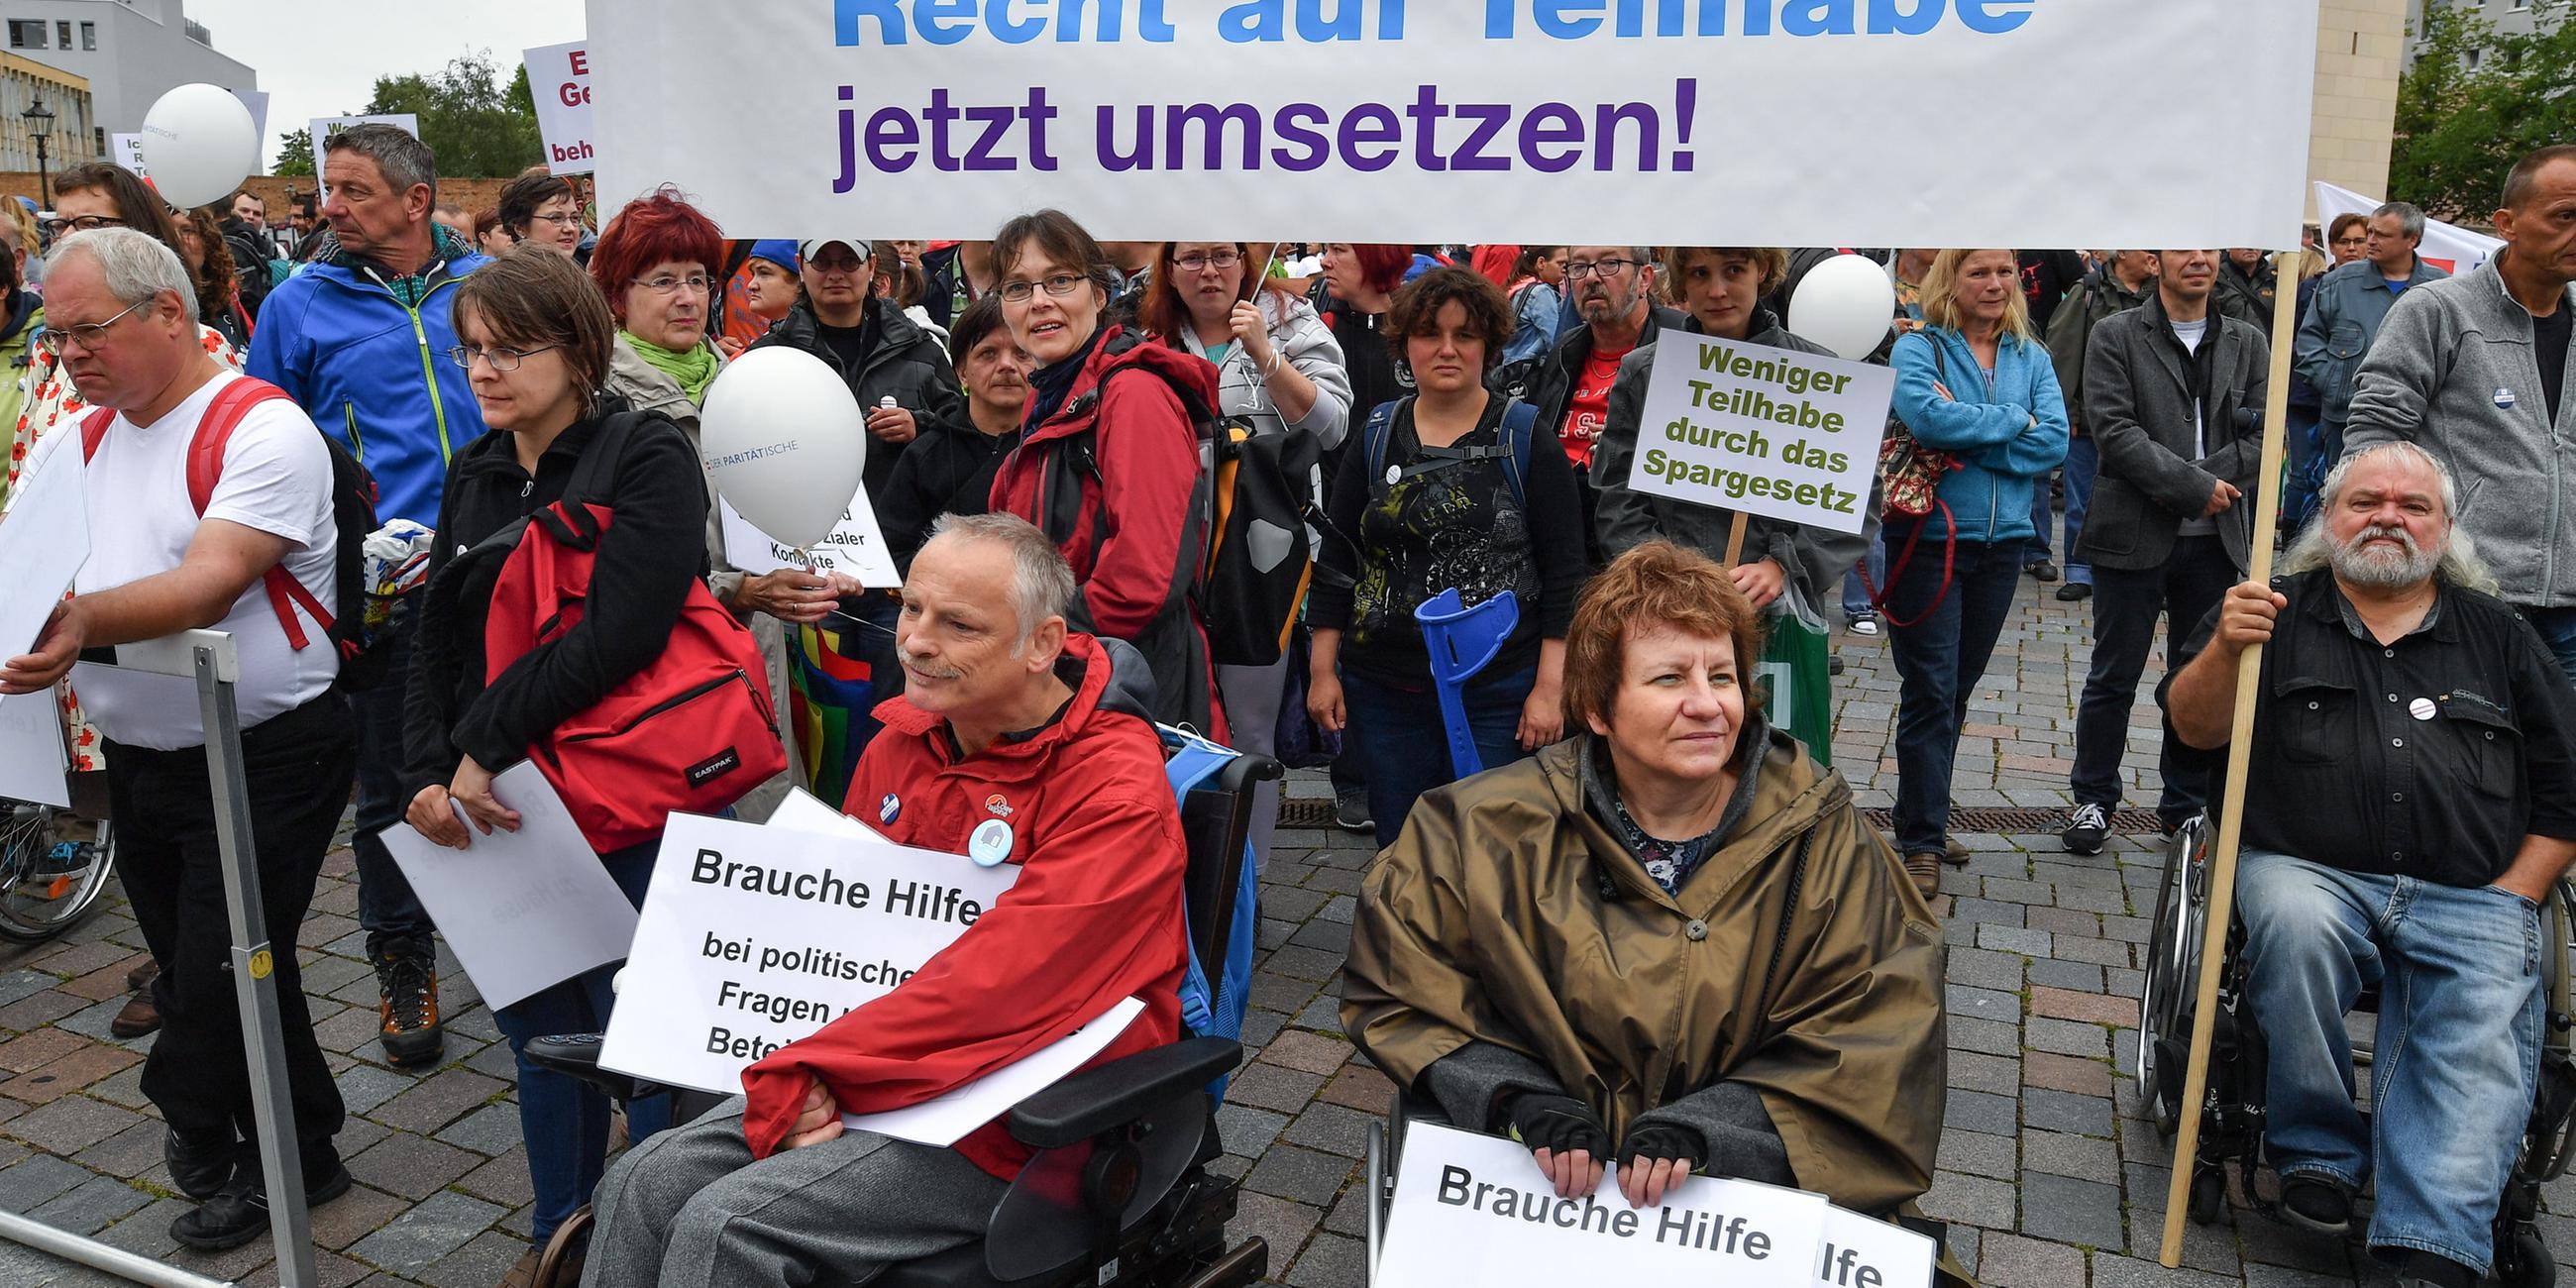 Behinderte und nichtbehinderte Menschen nehmen an einer Protestaktion teil. In der Menge ein Trant mit dem Schriftzug "Recht auf Teilhabe jetzt umsetzen".